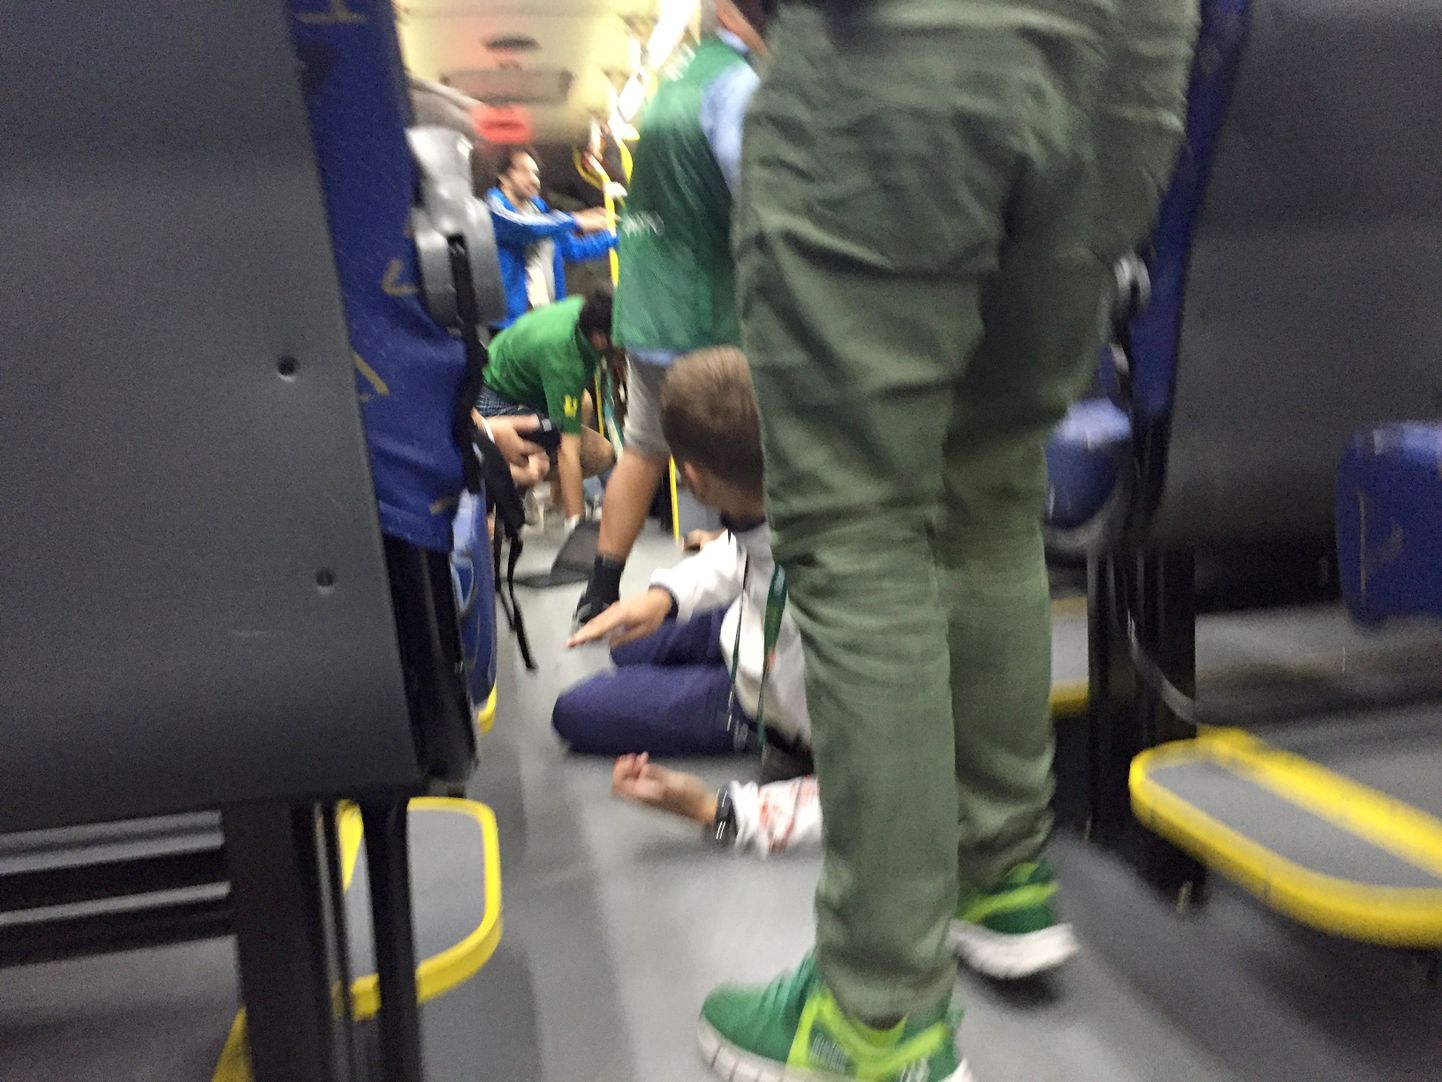 Meedia bussis viibinud ajakirjanik pildistas hetke, mil kolleegid kuulide eest bussi põrandale viskuvad.